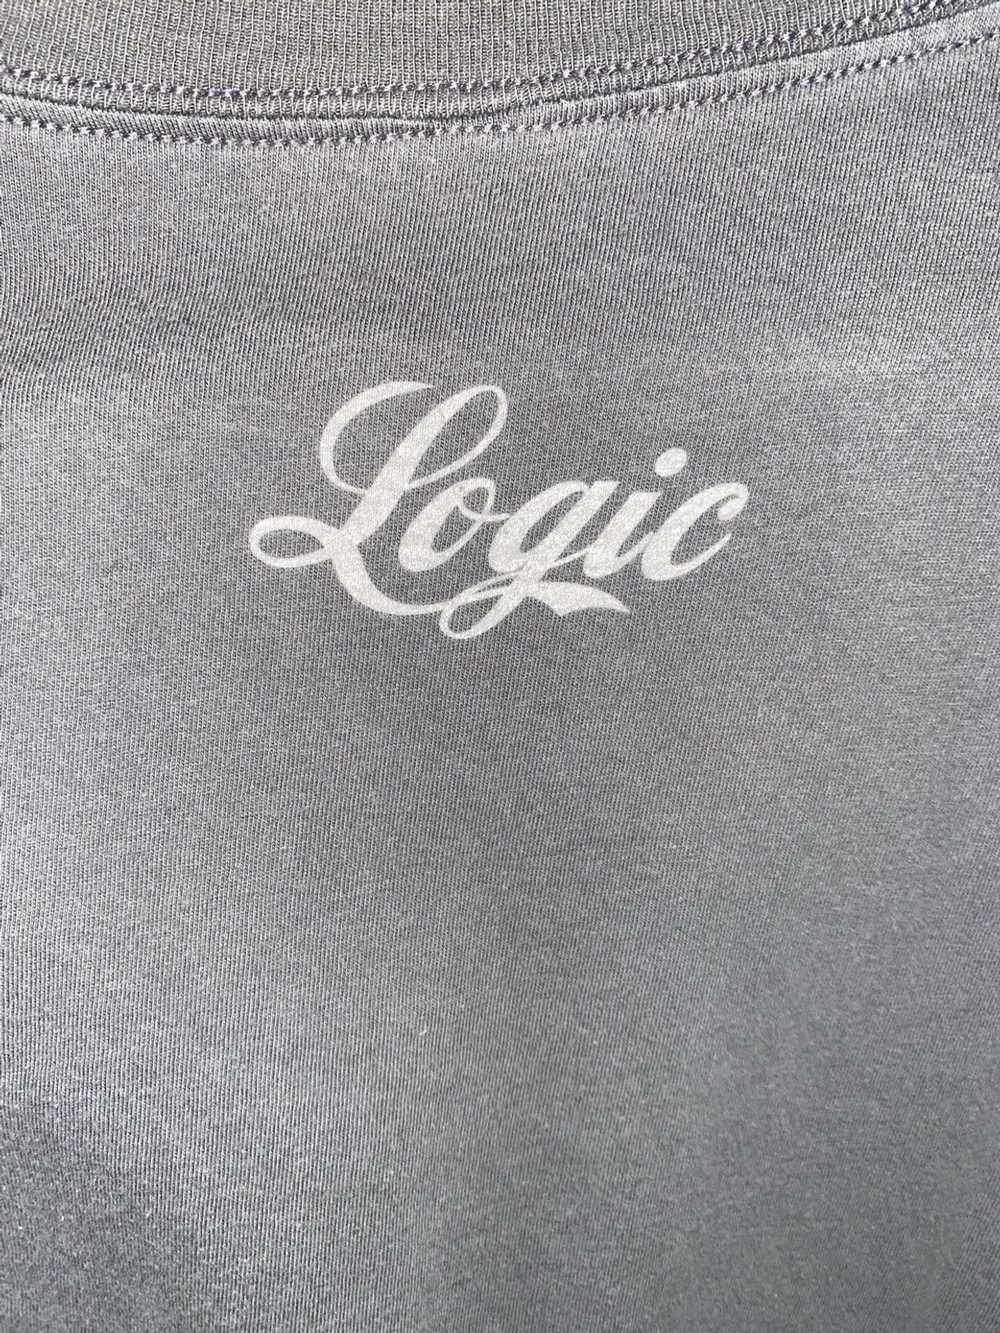 Next Level Apparel Vintage Logic “Under Pressure”… - image 4